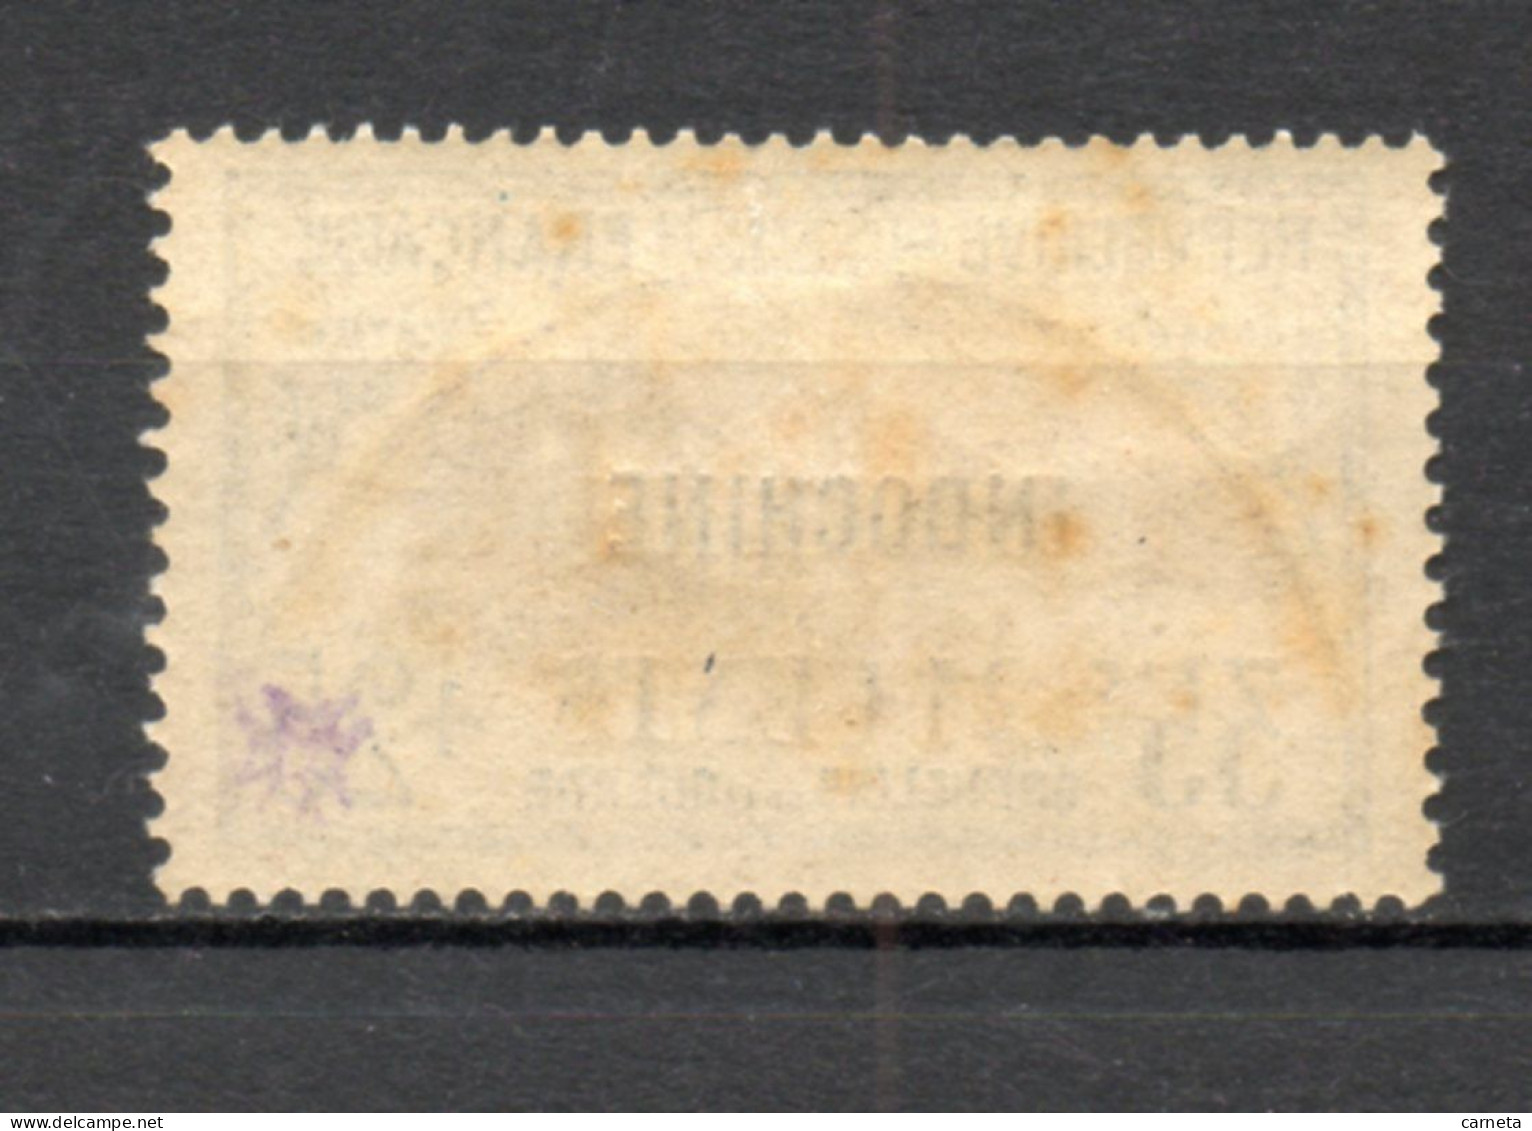 INDOCHINE  N° 92   NEUF AVEC CHARNIERE  COTE 10.00€     ORPHELINS DE GUERRE  SURCHARGE  VOIR DESCRIPTION - Unused Stamps